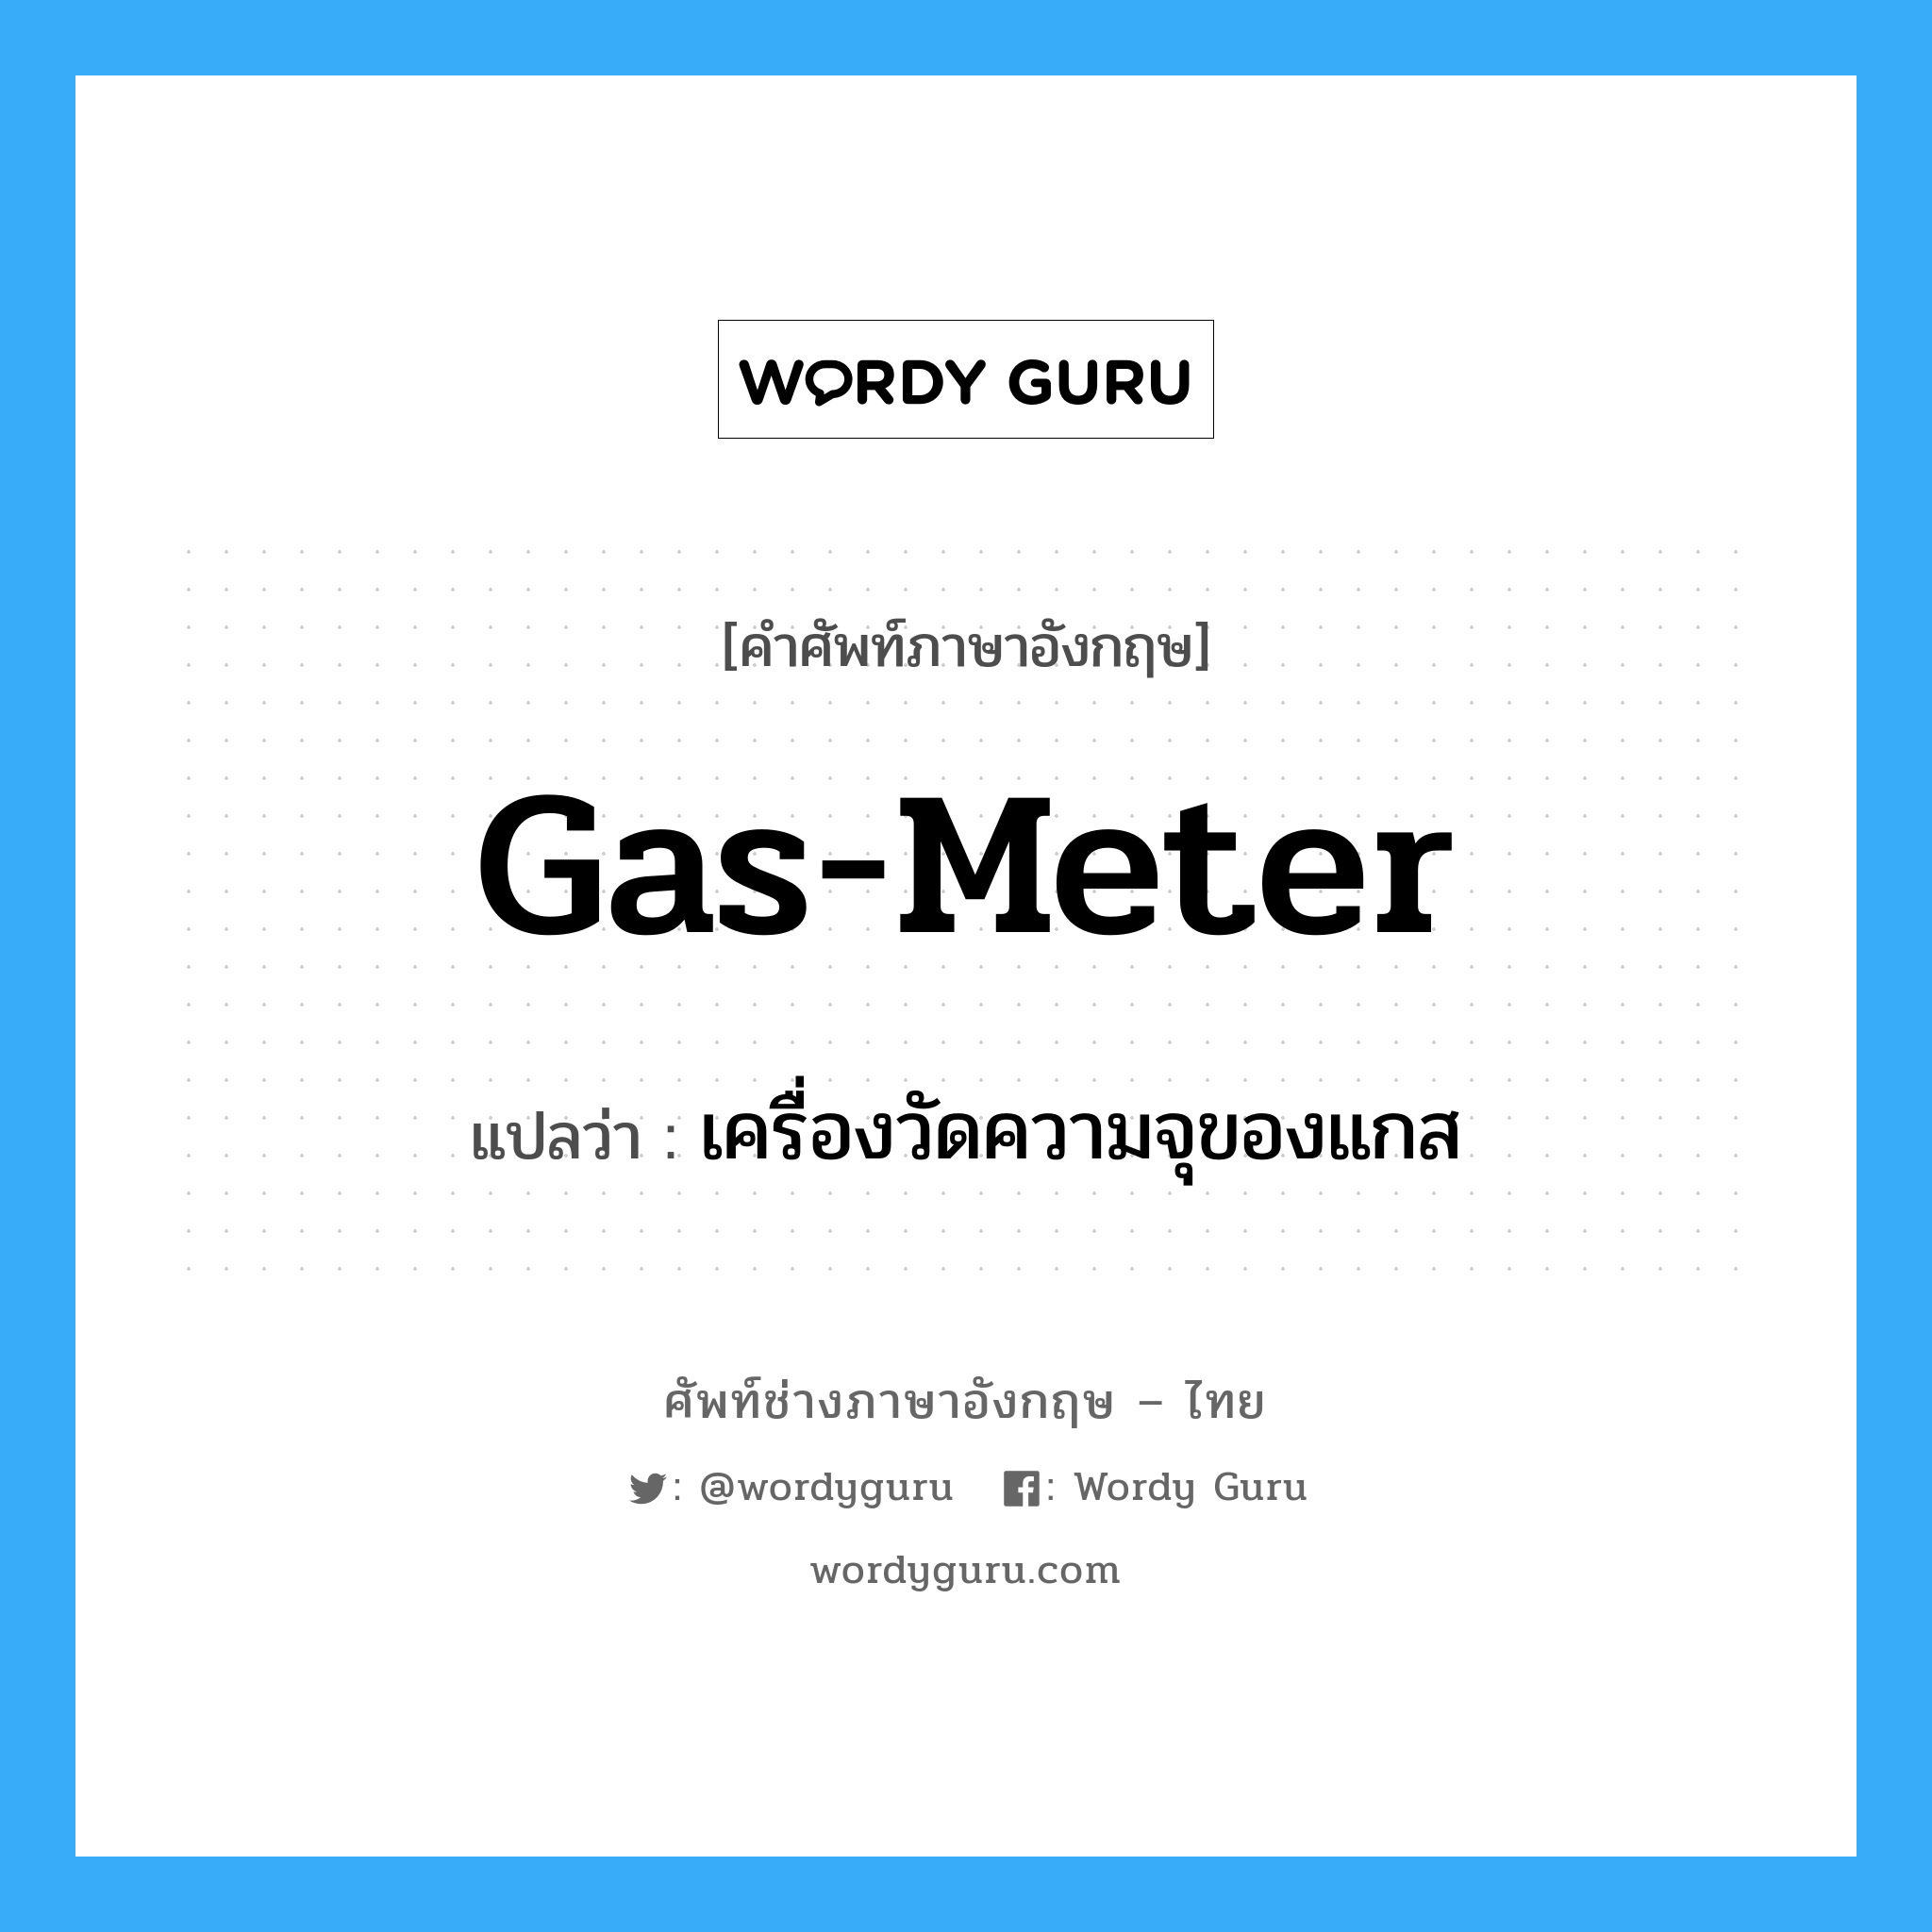 เครื่องวัดความจุของแกส ภาษาอังกฤษ?, คำศัพท์ช่างภาษาอังกฤษ - ไทย เครื่องวัดความจุของแกส คำศัพท์ภาษาอังกฤษ เครื่องวัดความจุของแกส แปลว่า gas-meter